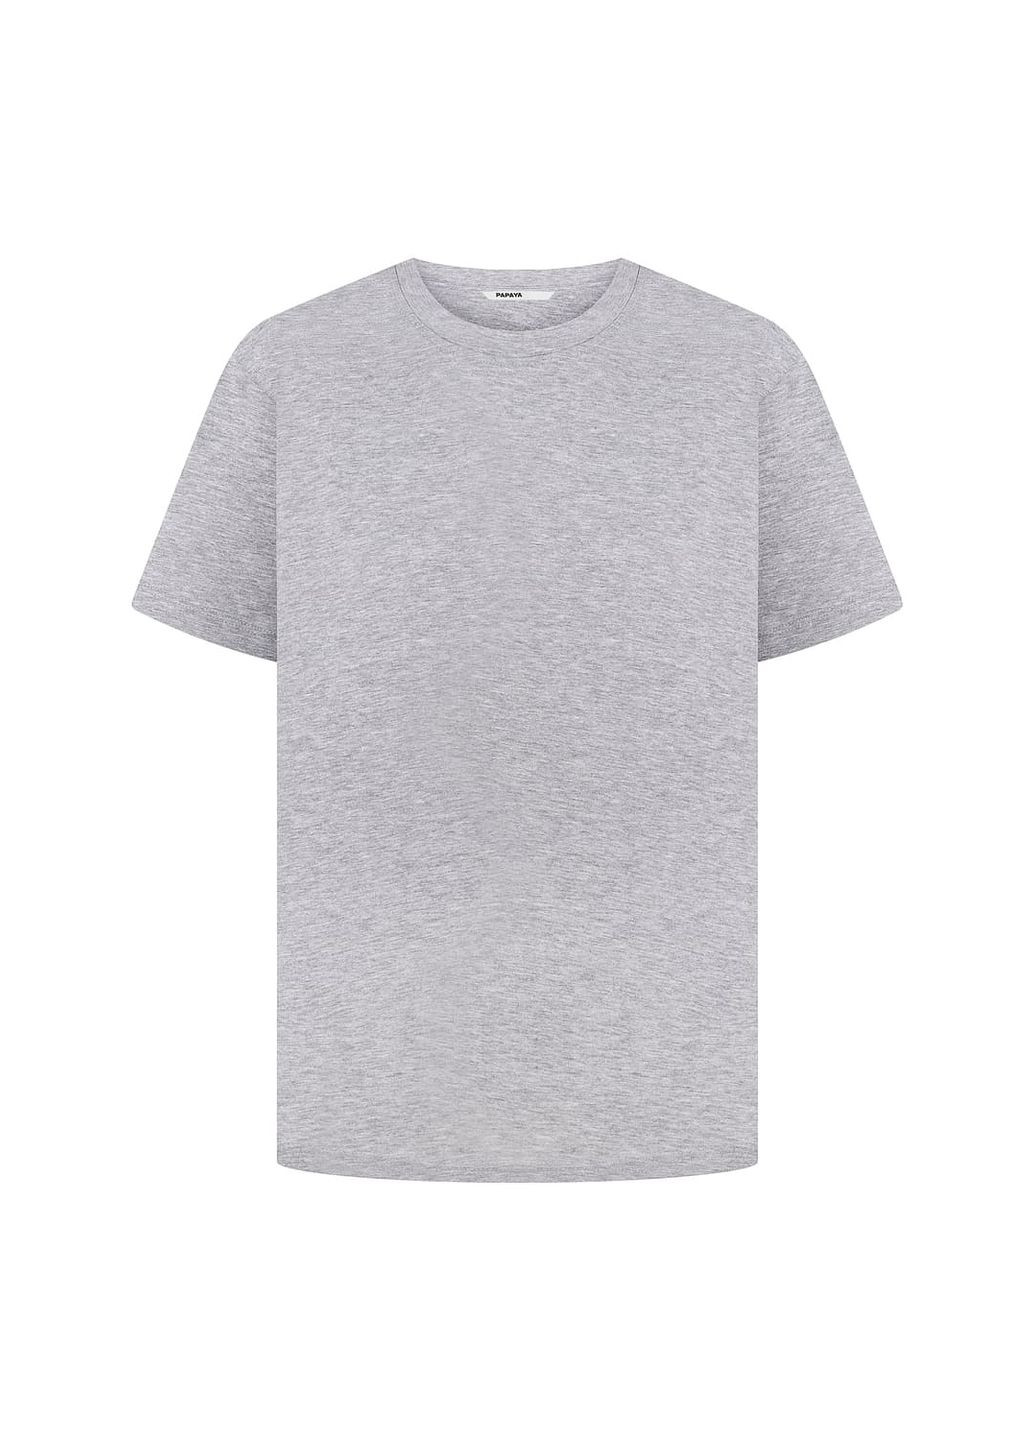 Комбинированная летняя футболка oversize серый меланж 1005-22 Papaya